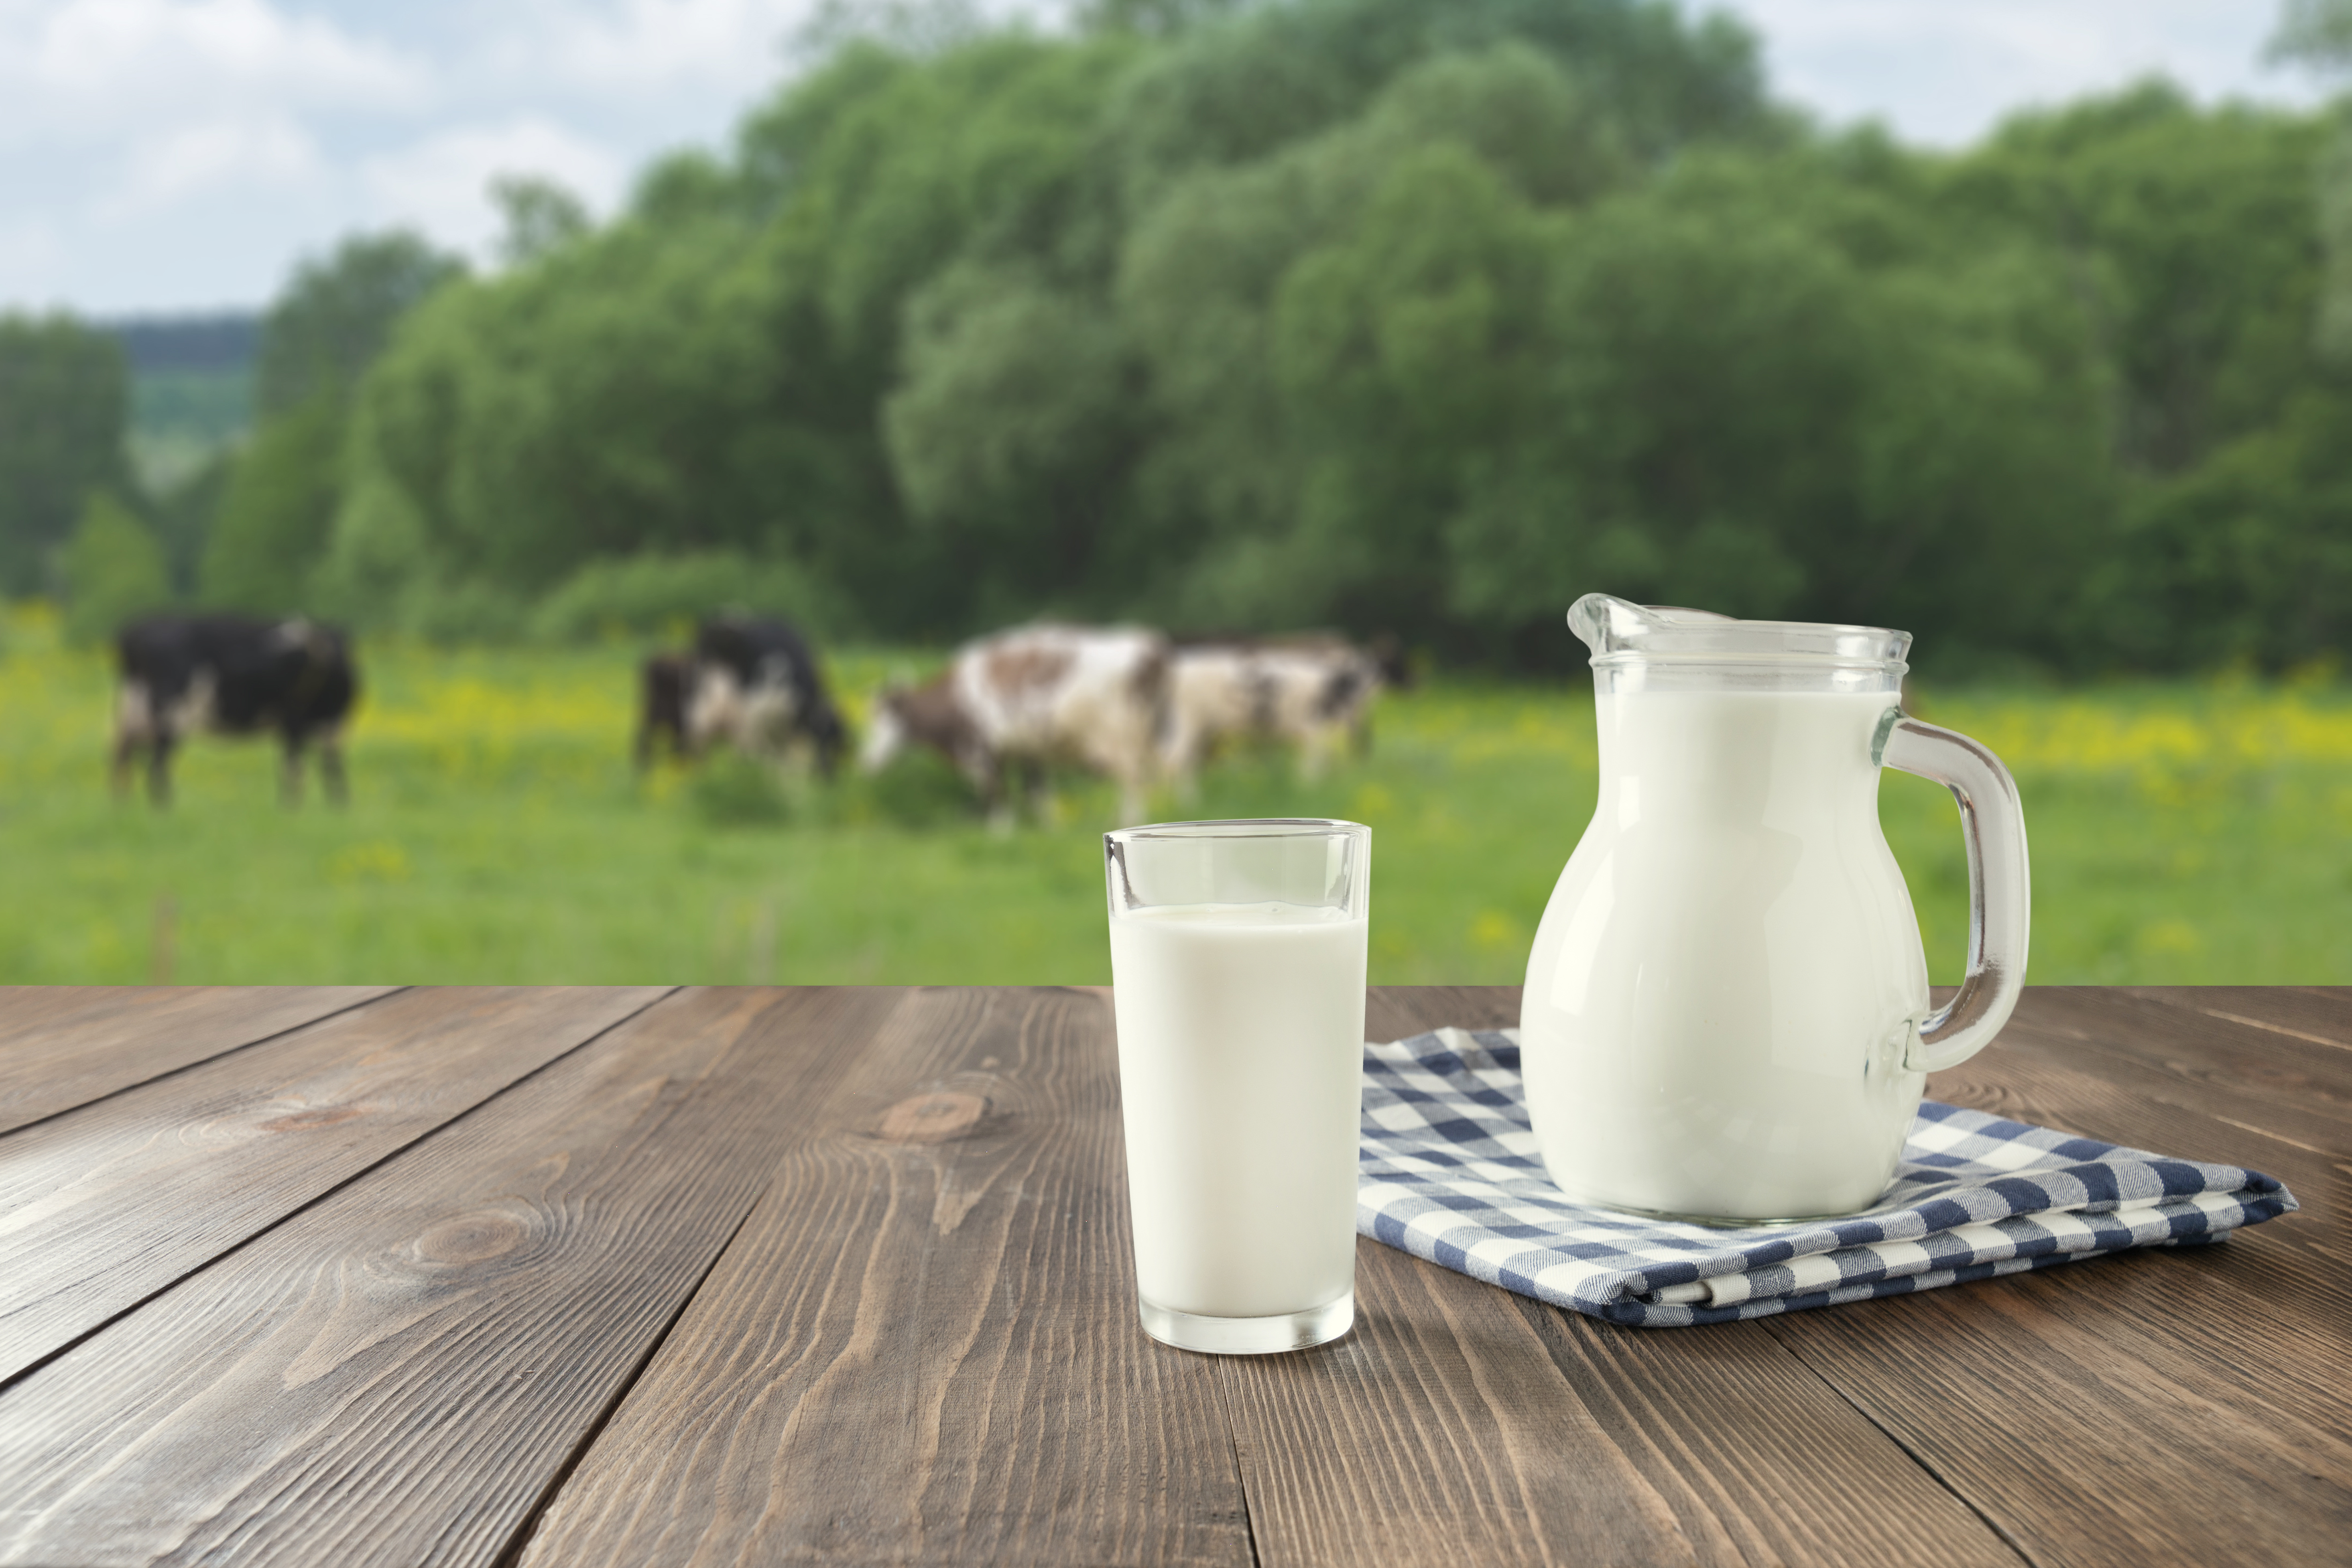 La consommation de lait de vache n'est pas associée à une incidence plus élevée de cancer du sein. © svetlana_cherruty, Adobe Stock